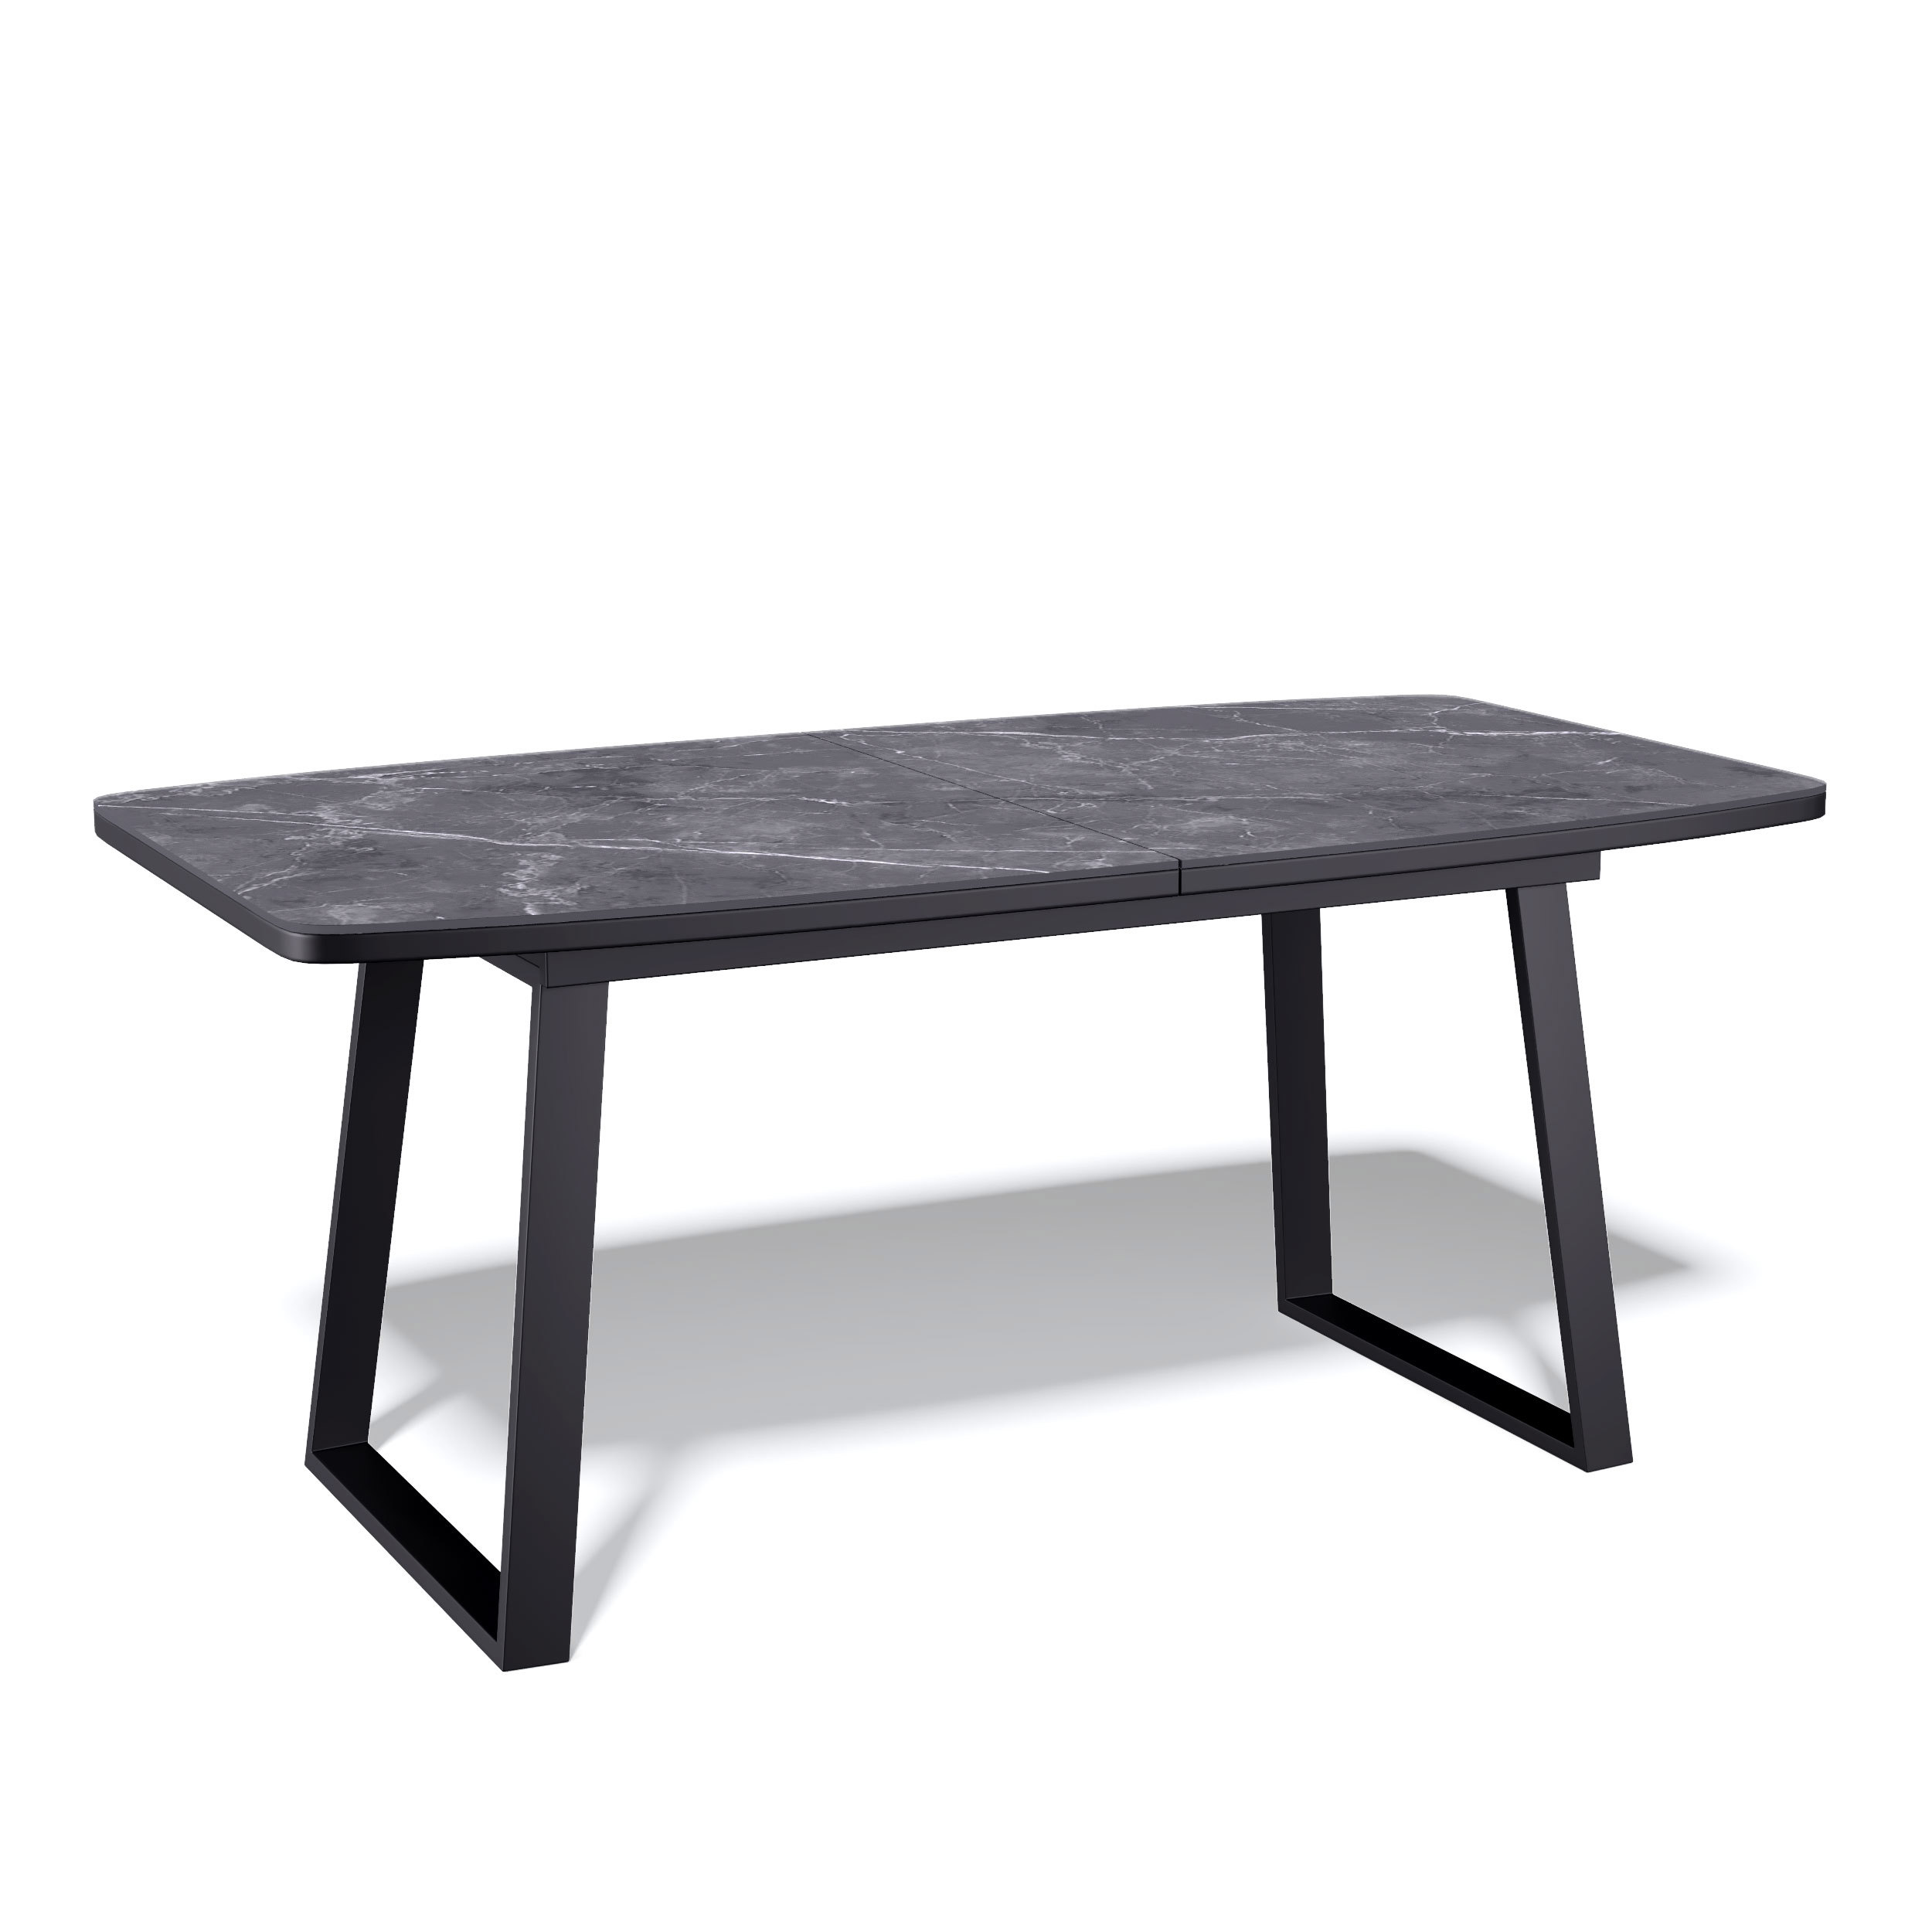 91054065 Кухонный стол прямоугольный 325182 140-180x80x76 см керамика цвет черный AZ STLM-0459694 KENNER